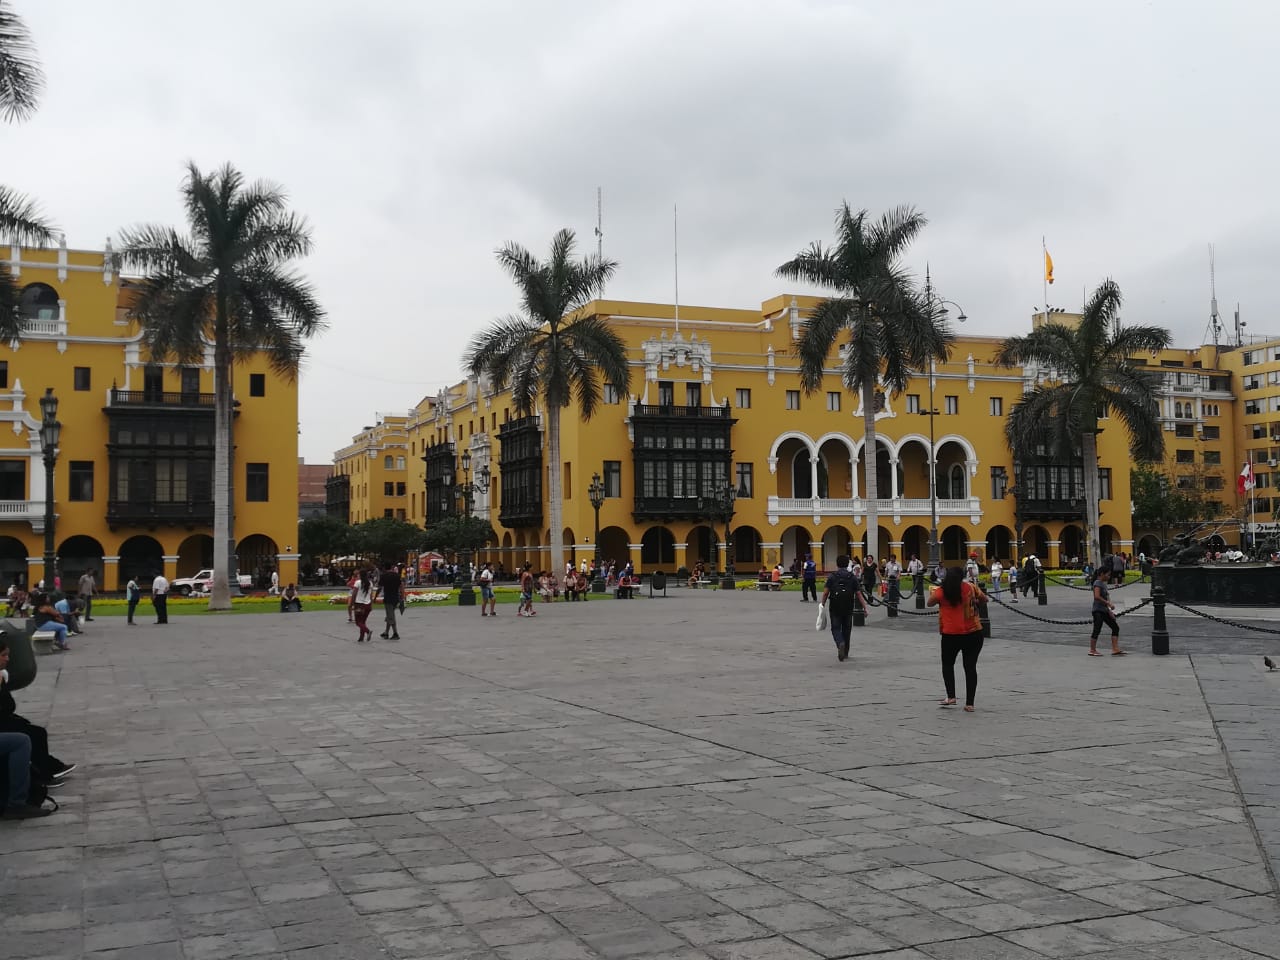 Peru / Plaza de armas